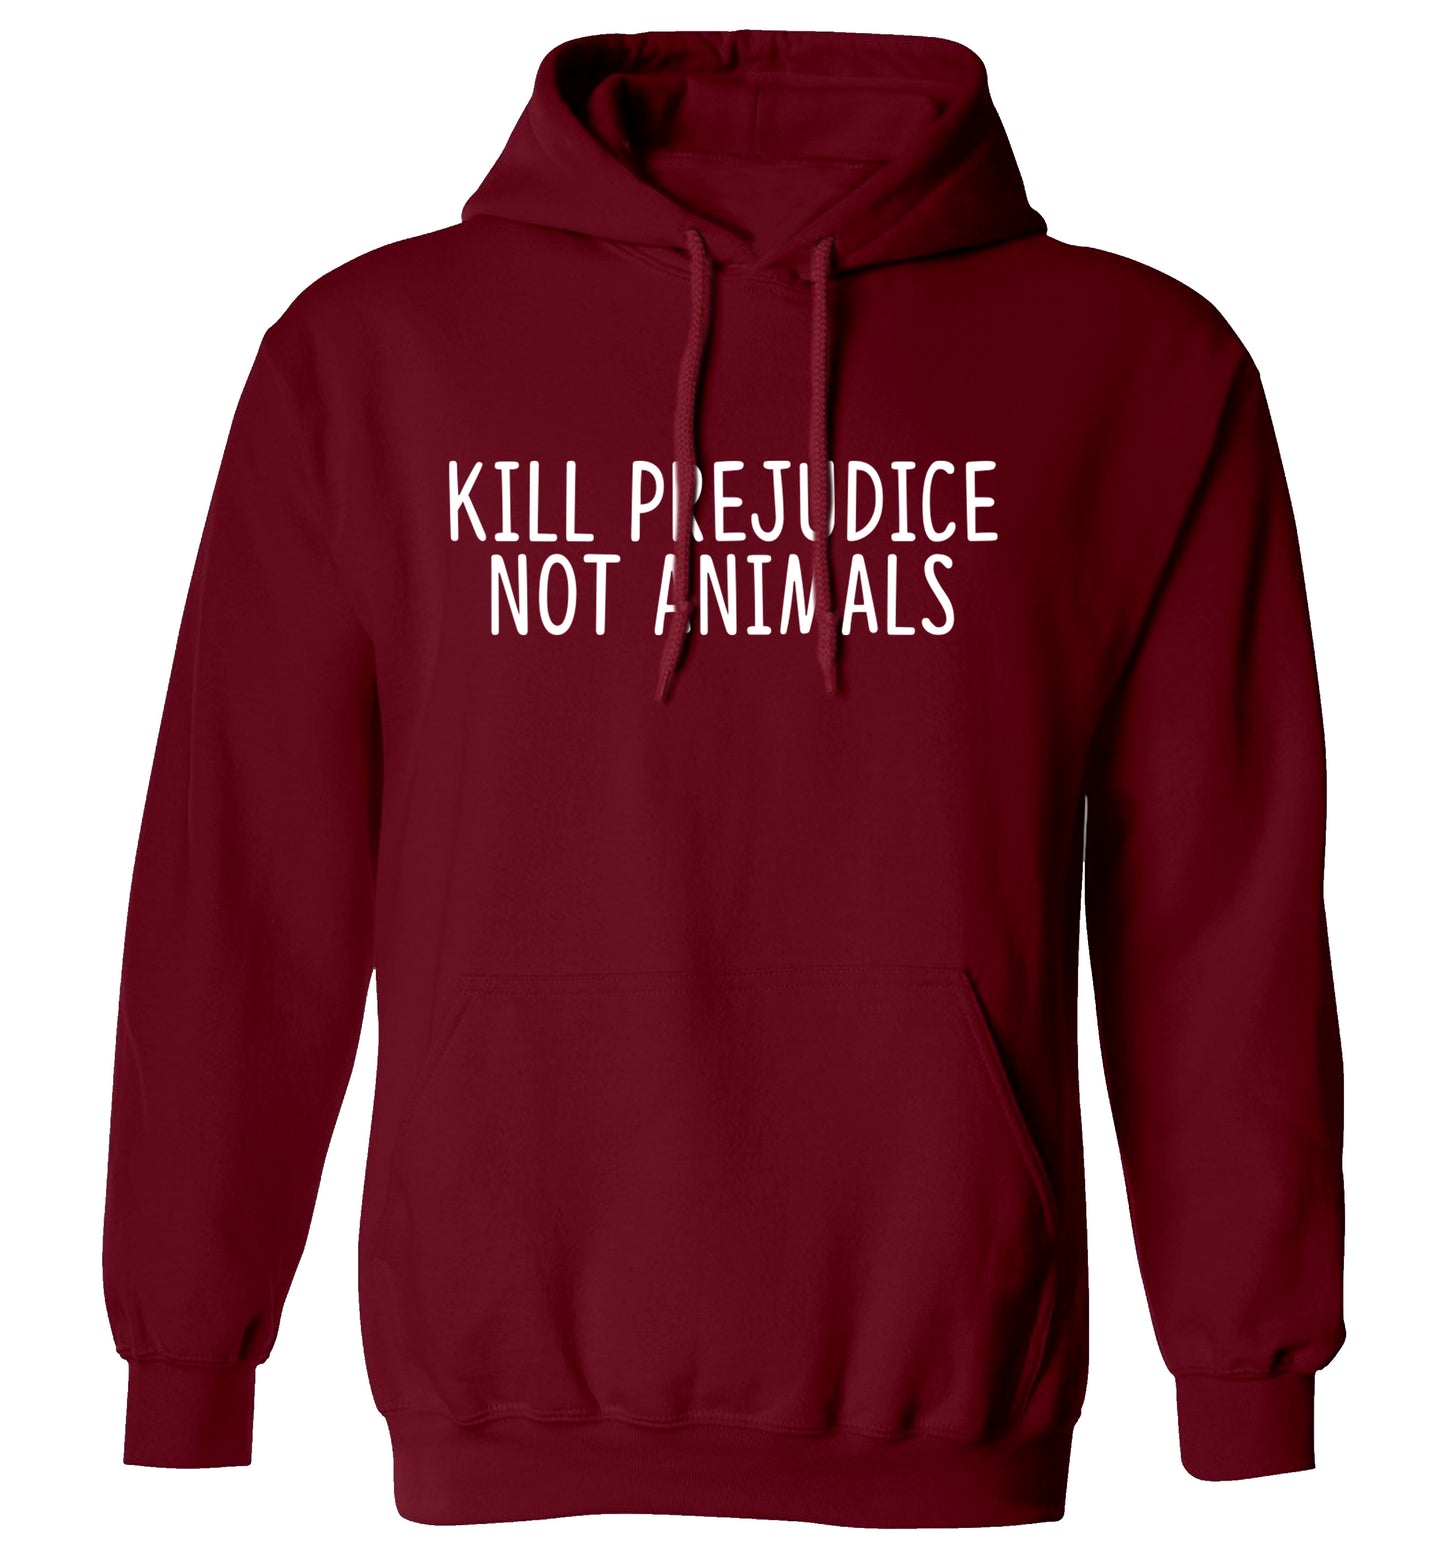 Kill Prejudice Not Animals adults unisex maroon hoodie 2XL